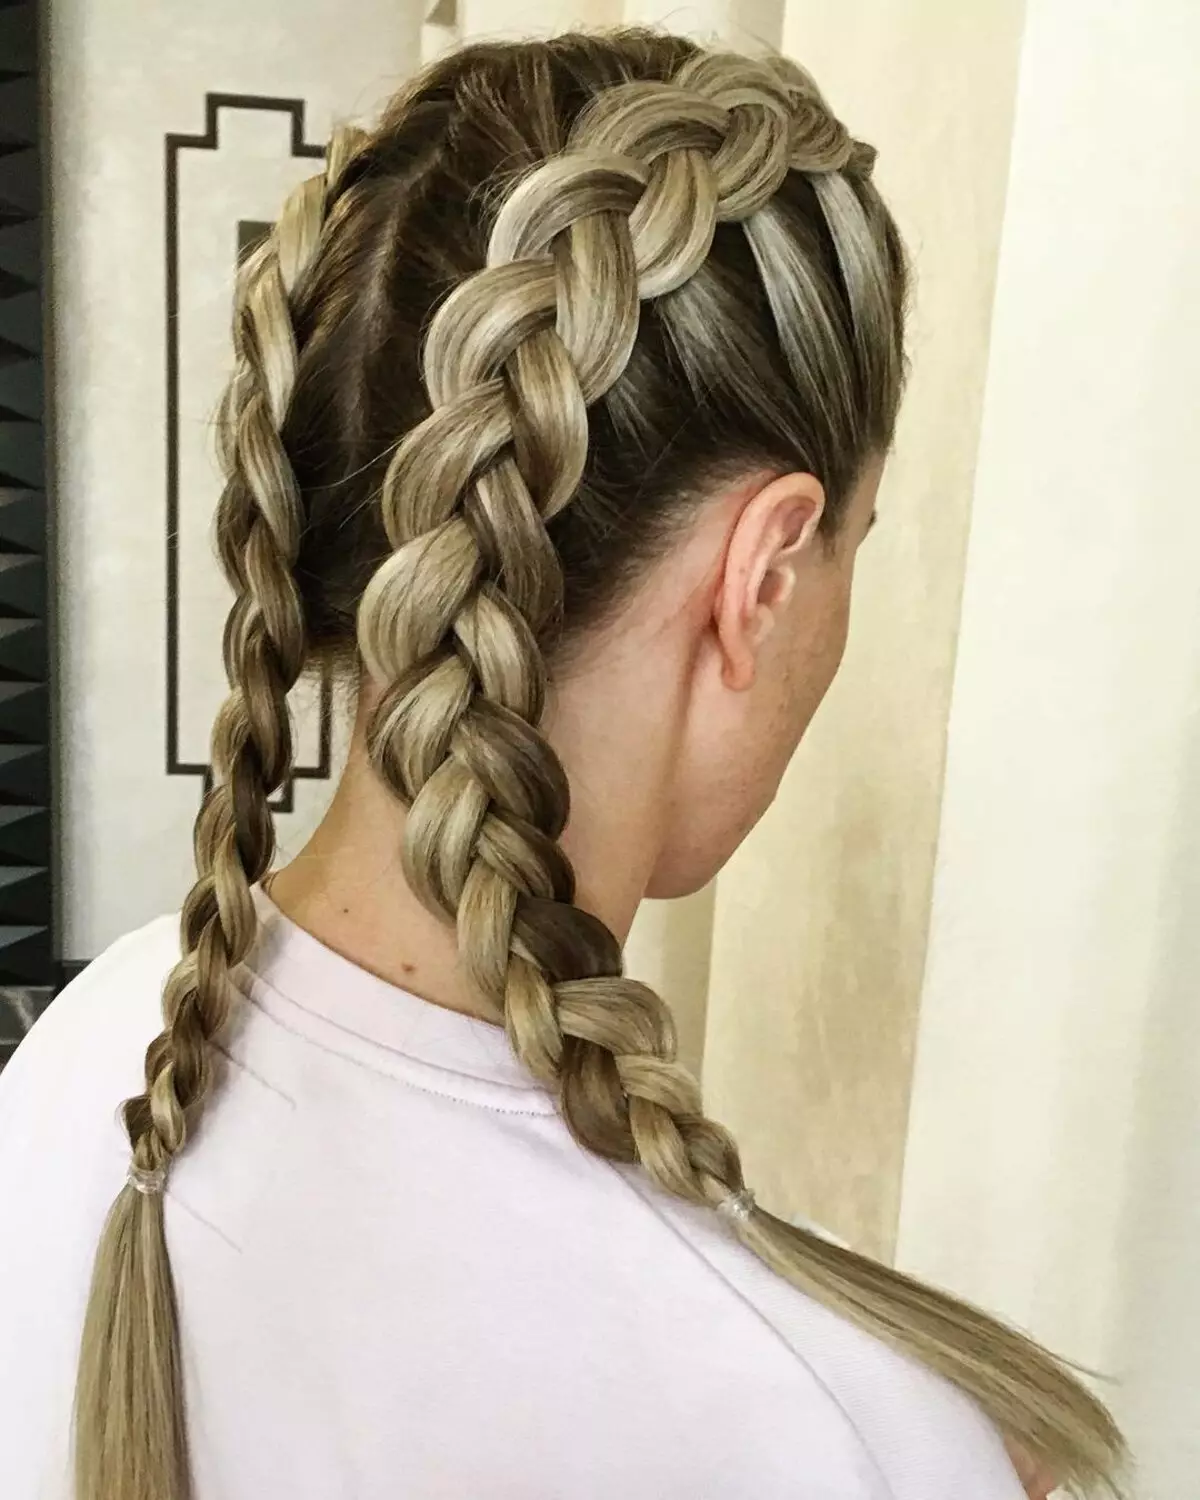 ວິທີການ braid ສອງ pigtails? 61 ຮູບວິທີການທໍລະມານ 2 braids ຈາກຜົມຍາວ? ຖັກແສ່ວຢູ່ດ້ານຂ້າງ. ຊົງຜົມທີ່ສວຍງາມທີ່ມີ braids ແລະຜົມວ່າງ 5817_22